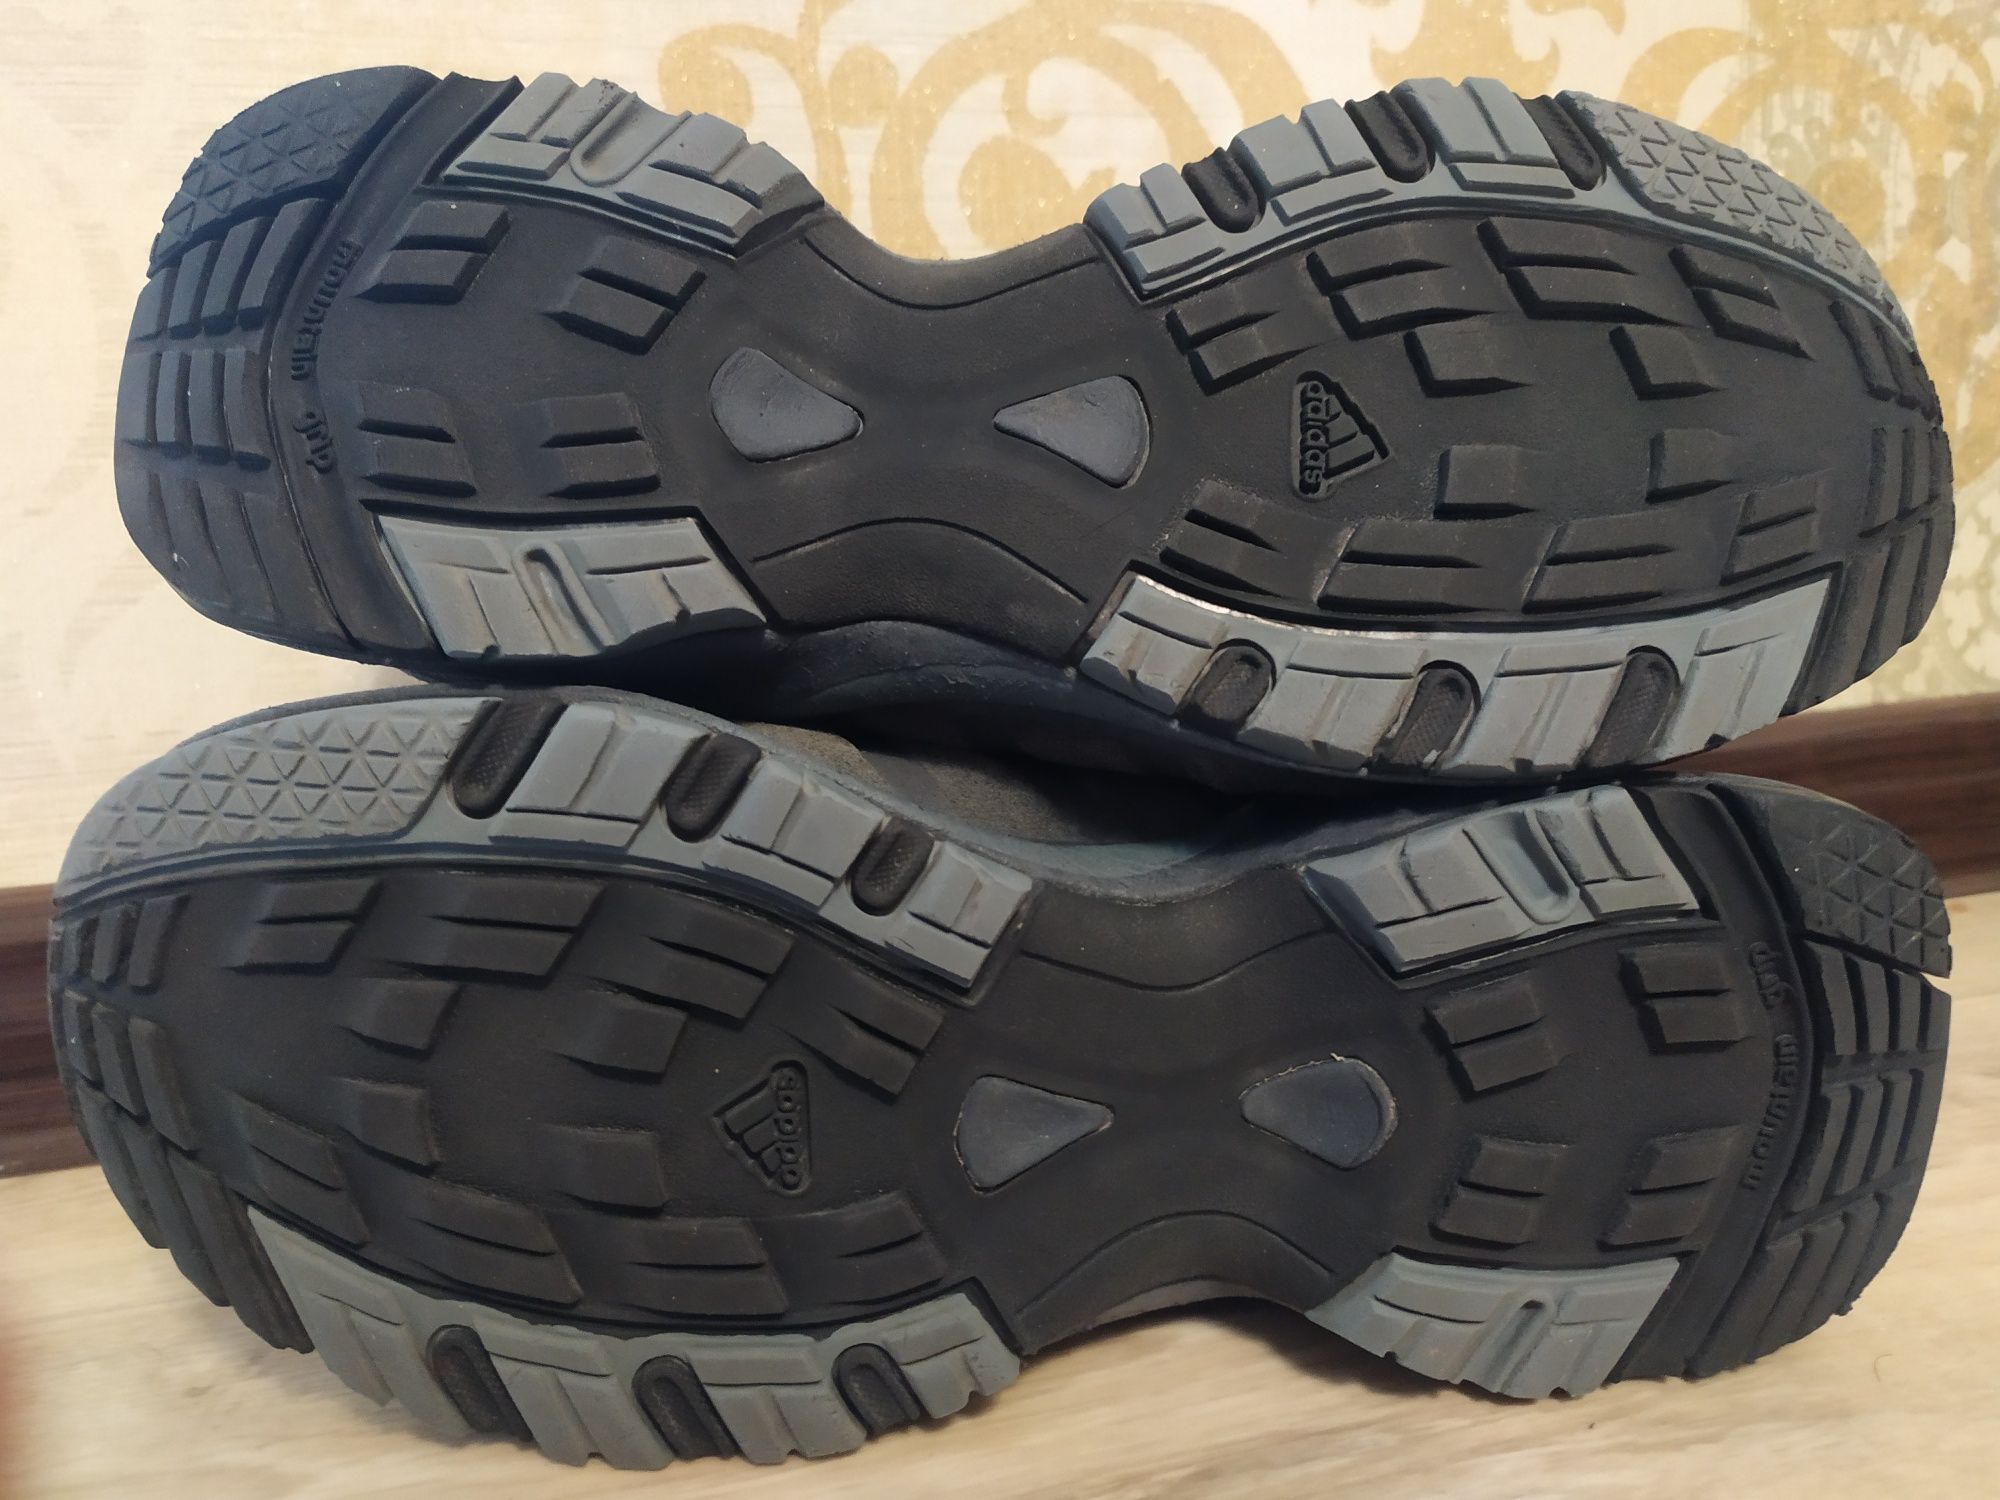 Трекинговые термо ботинки кроссовки Adidas  р.37-37,5